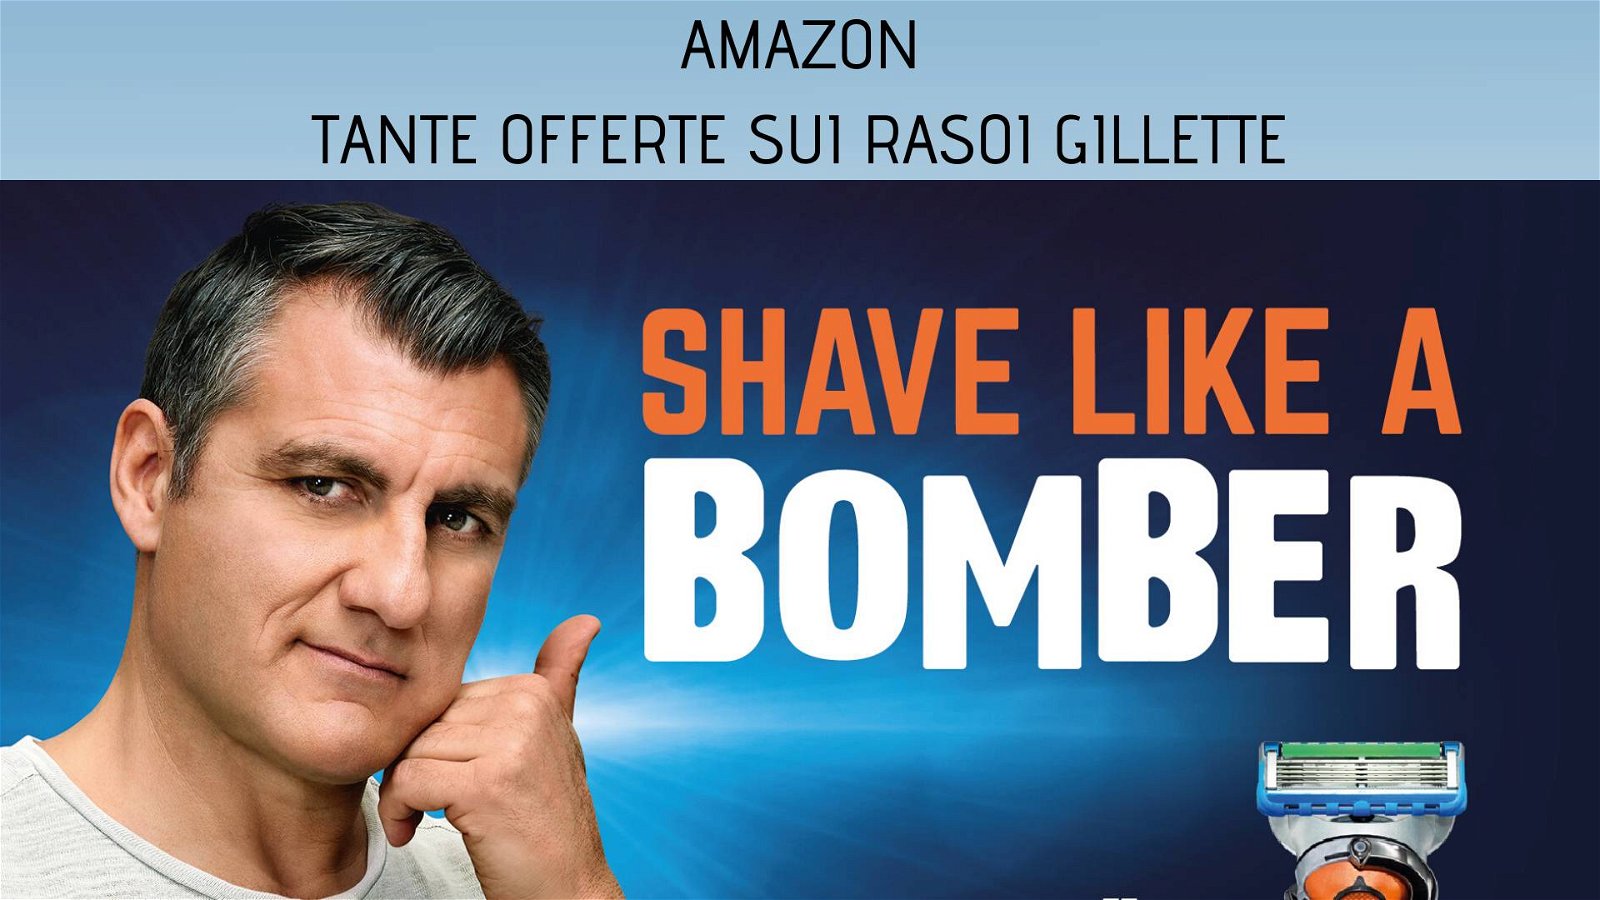 Immagine di Rasoi da barba Gillette, tante offerte Amazon per una rasatura da bomber!